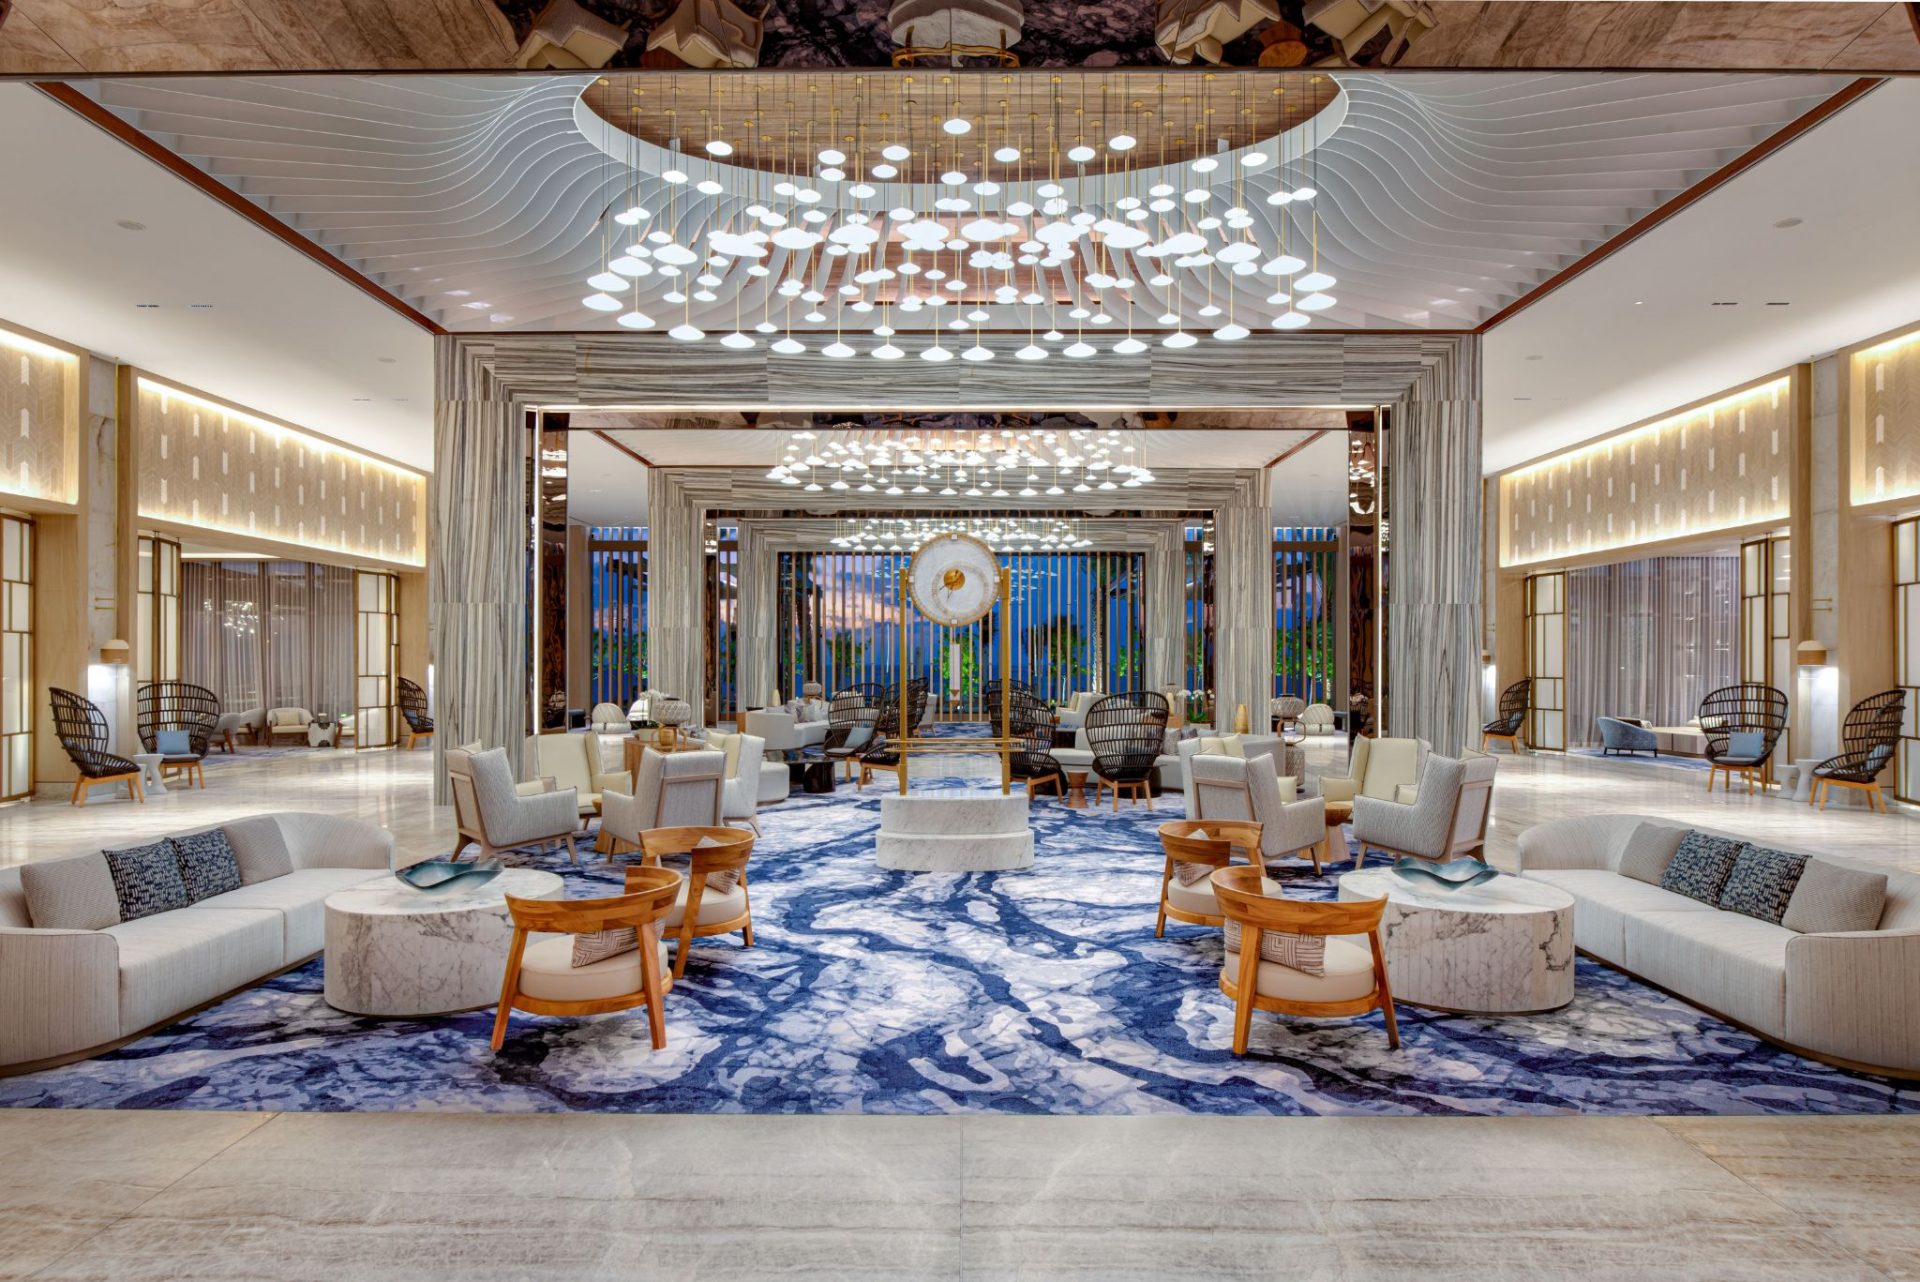 Waldorf Astoria Cancun